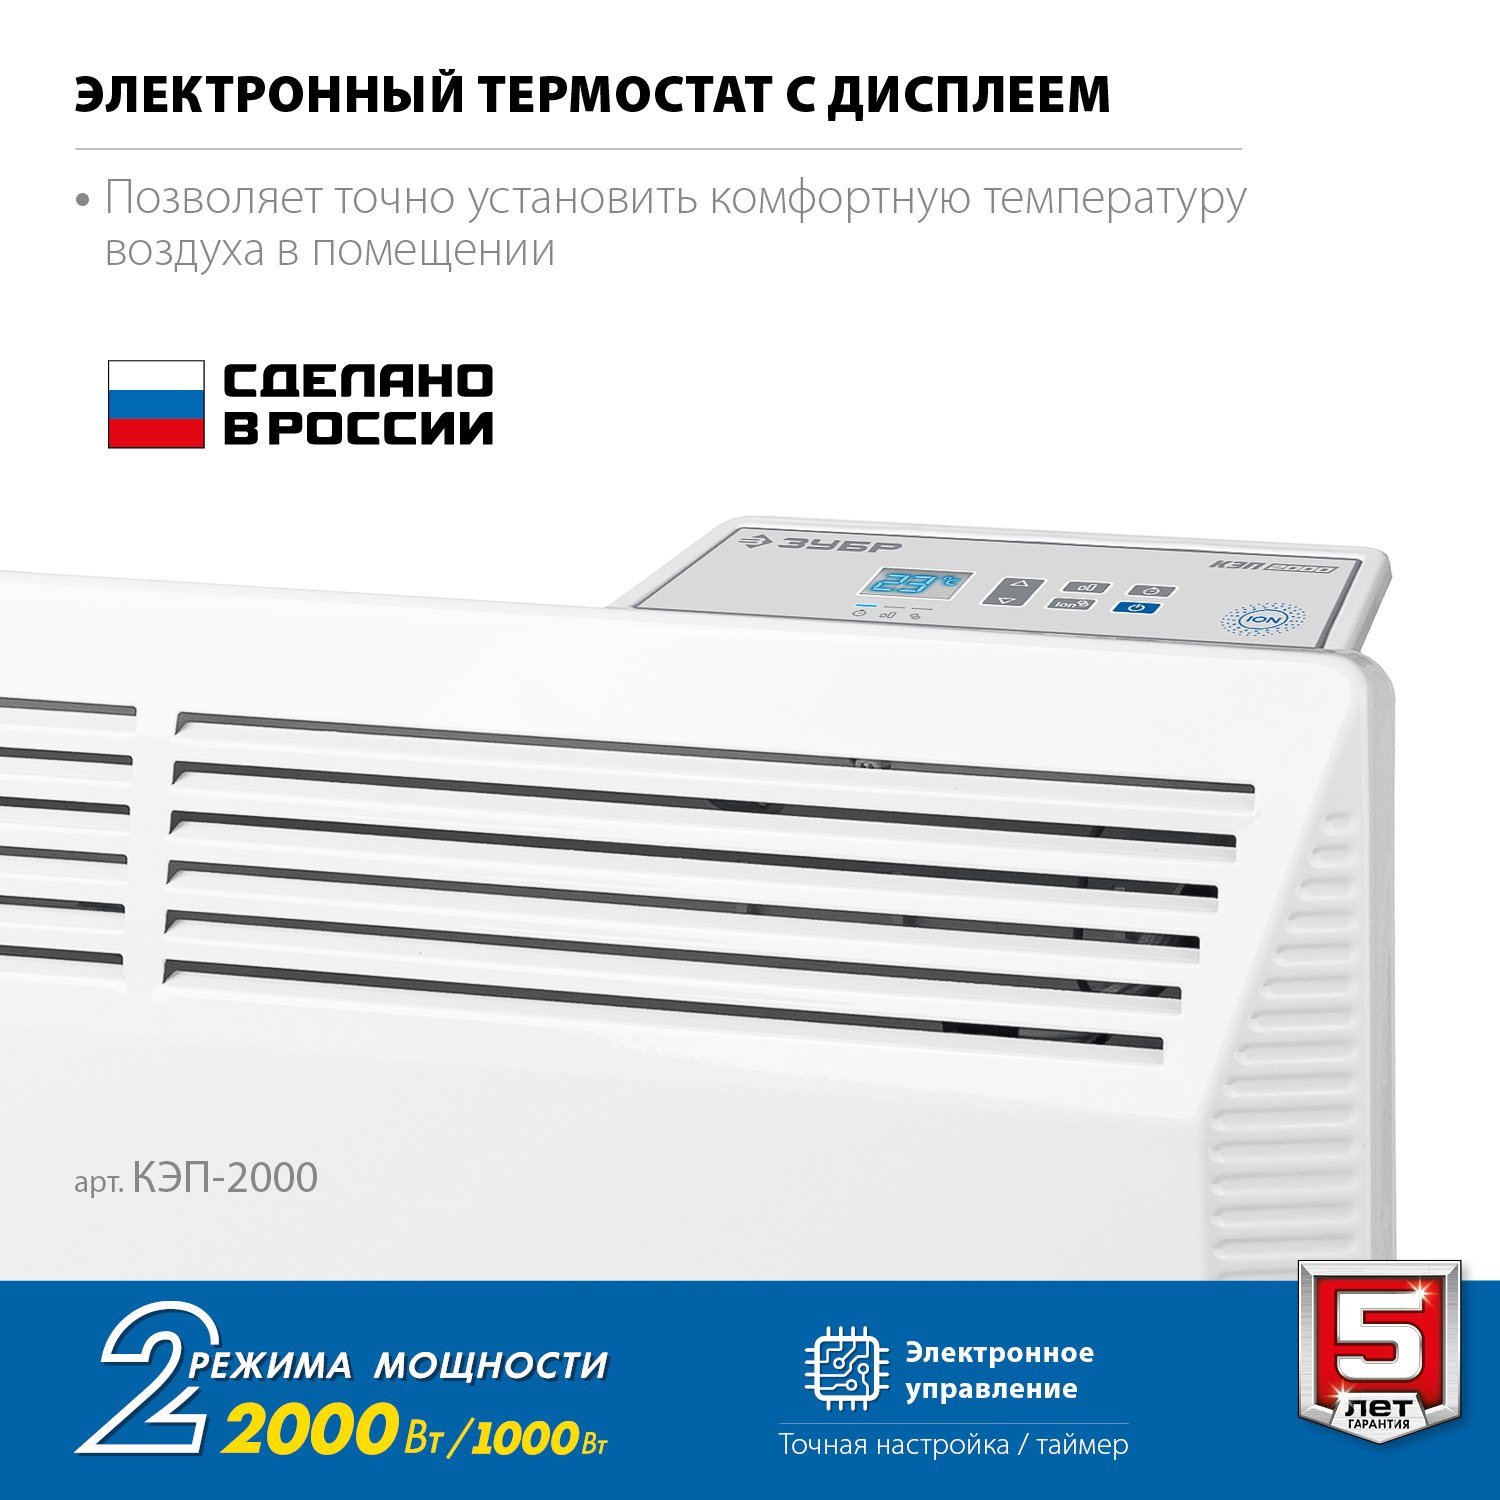 ЗУБР ПРО серия 2 кВт, электрический конвектор, Профессионал () (КЭП-2000)